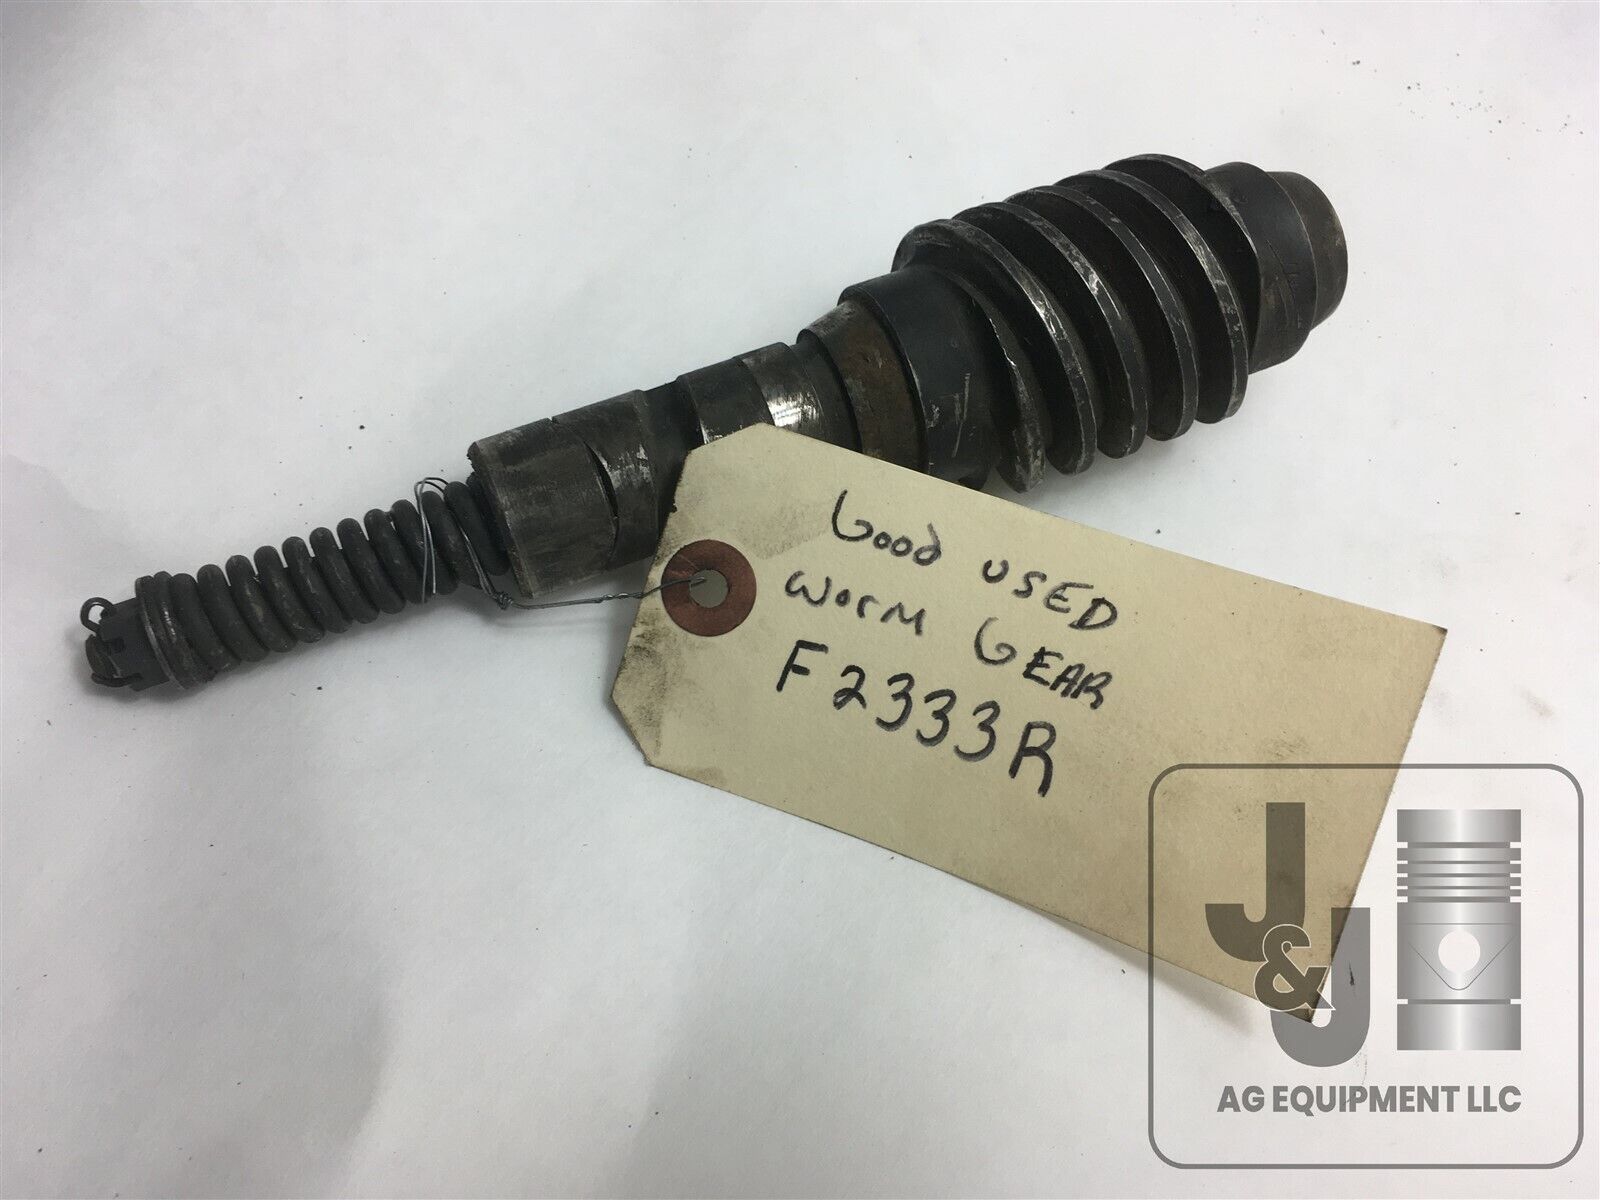 Genuine Used John Deere Power Steering Worm Gear F2333R 50 520 60 70 720